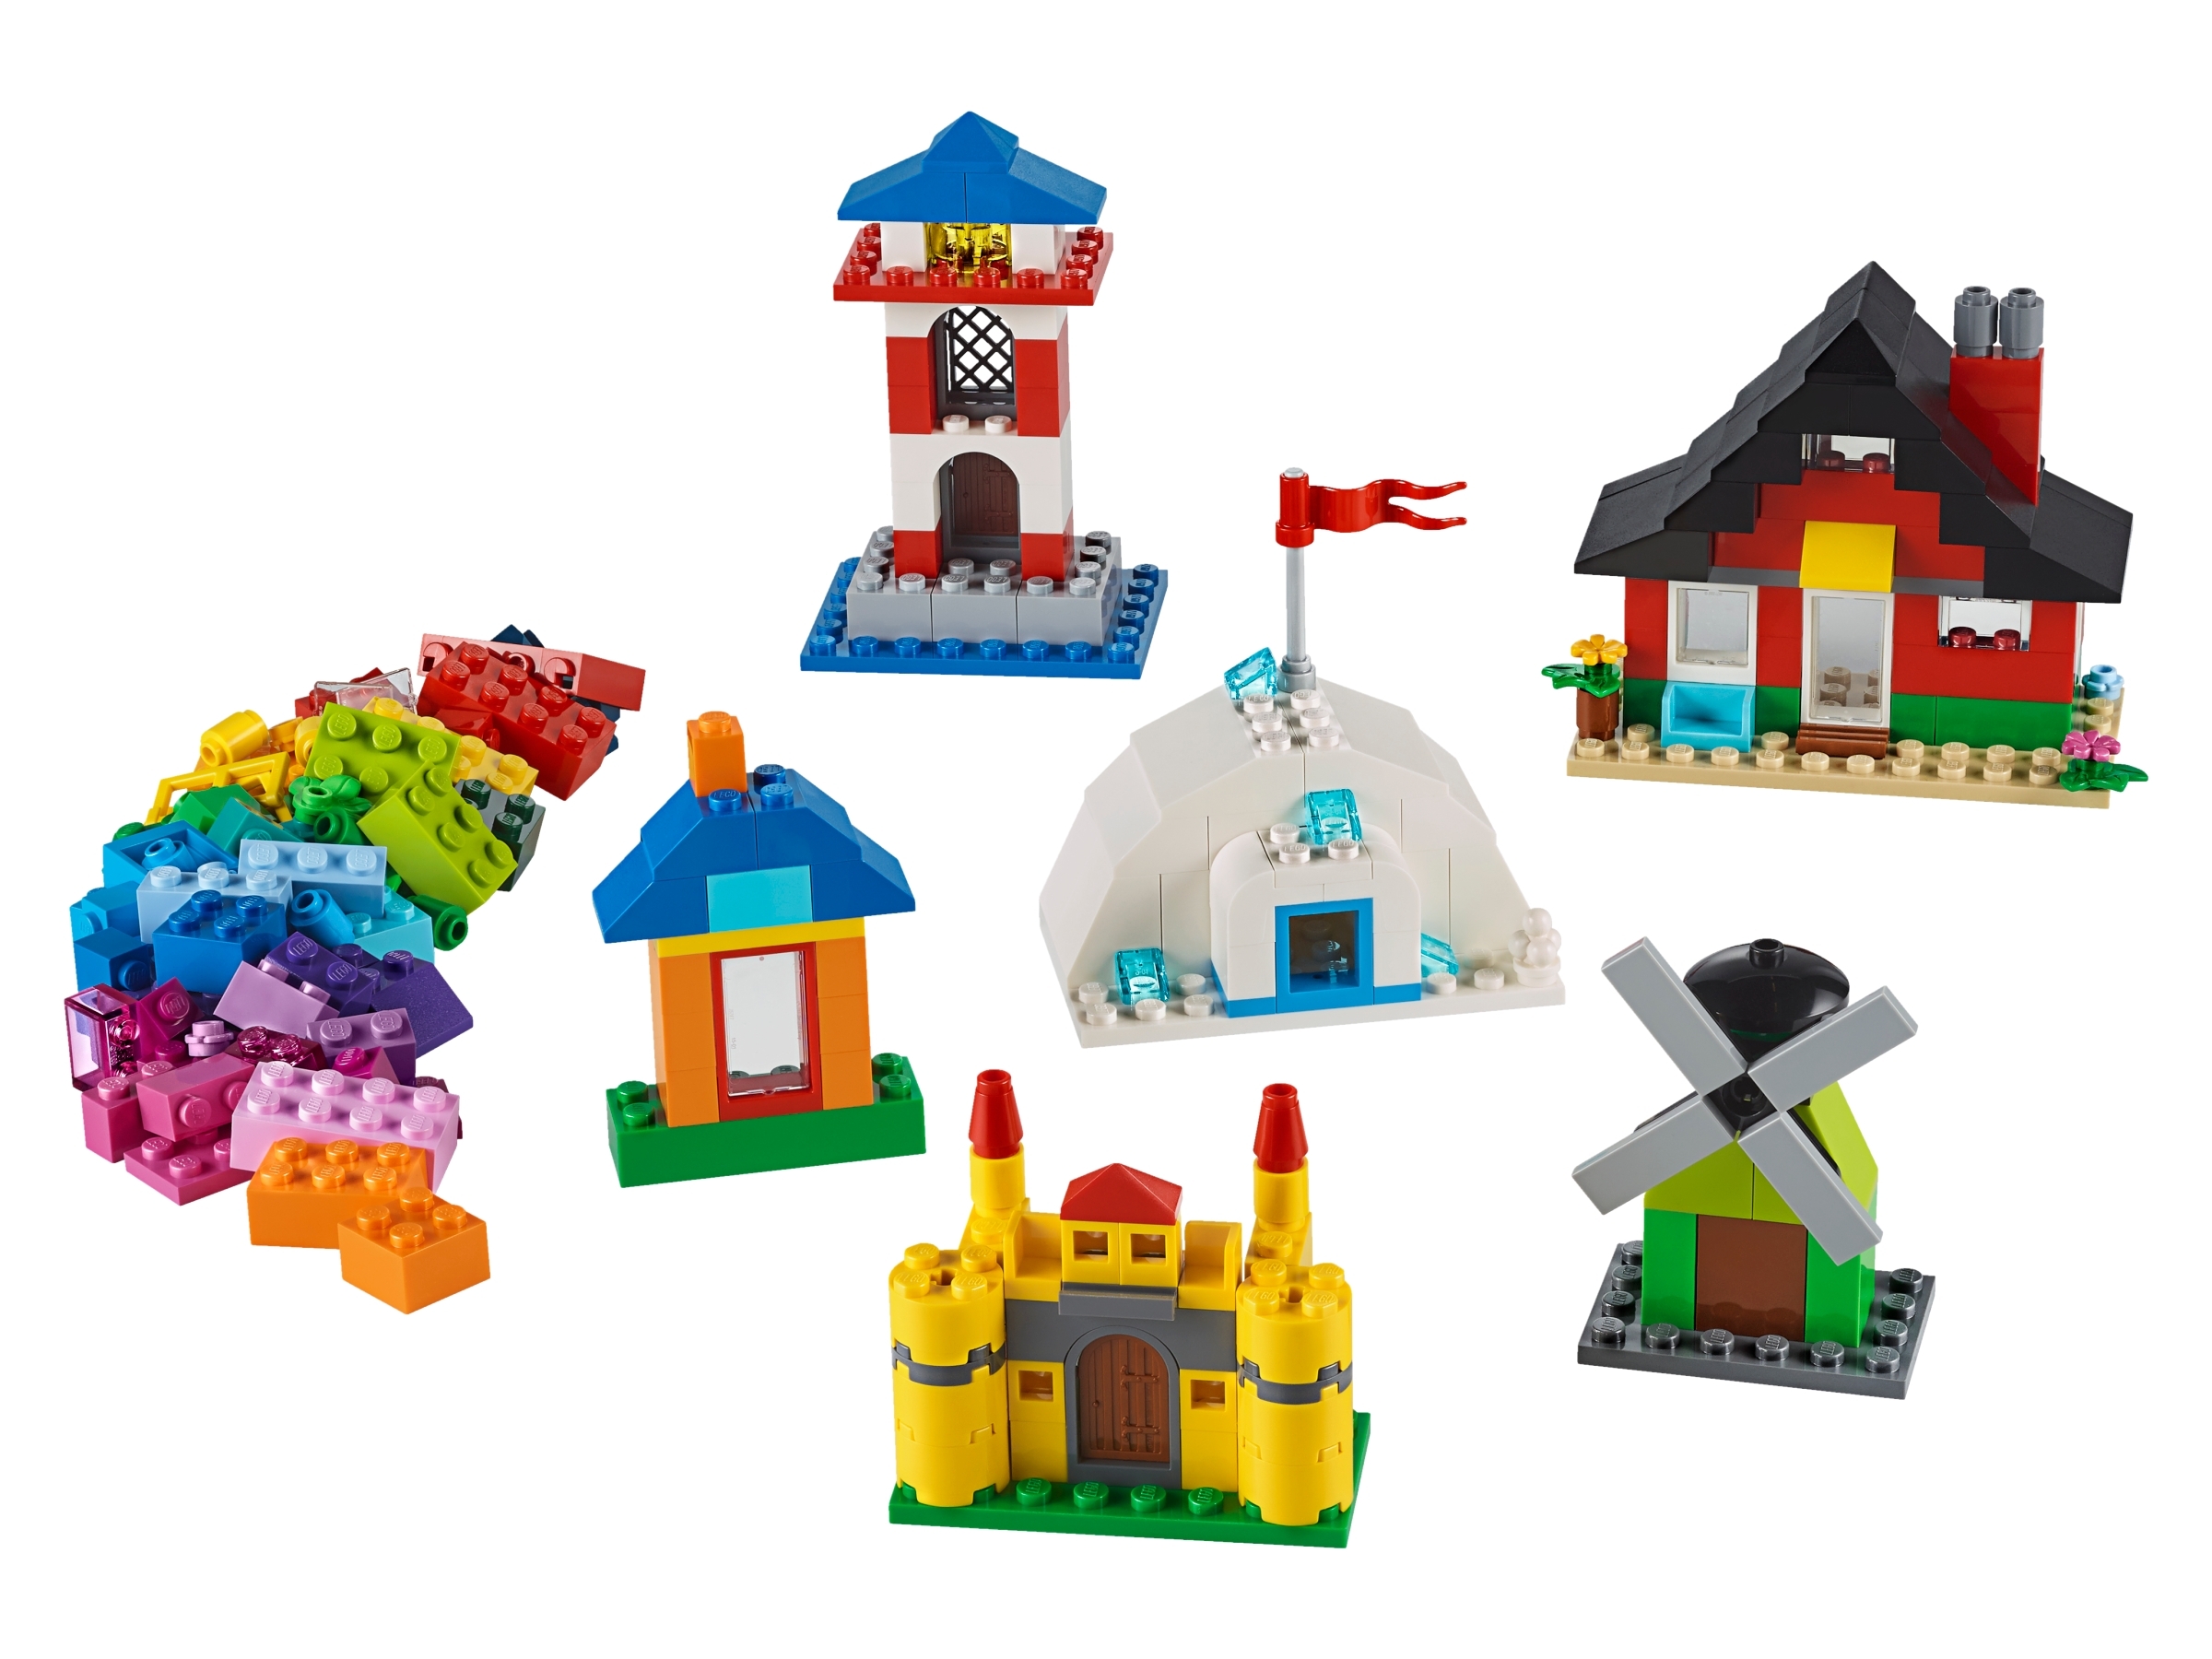 Ladrillos y Casas 11008 | Classic | Oficial LEGO® Shop ES